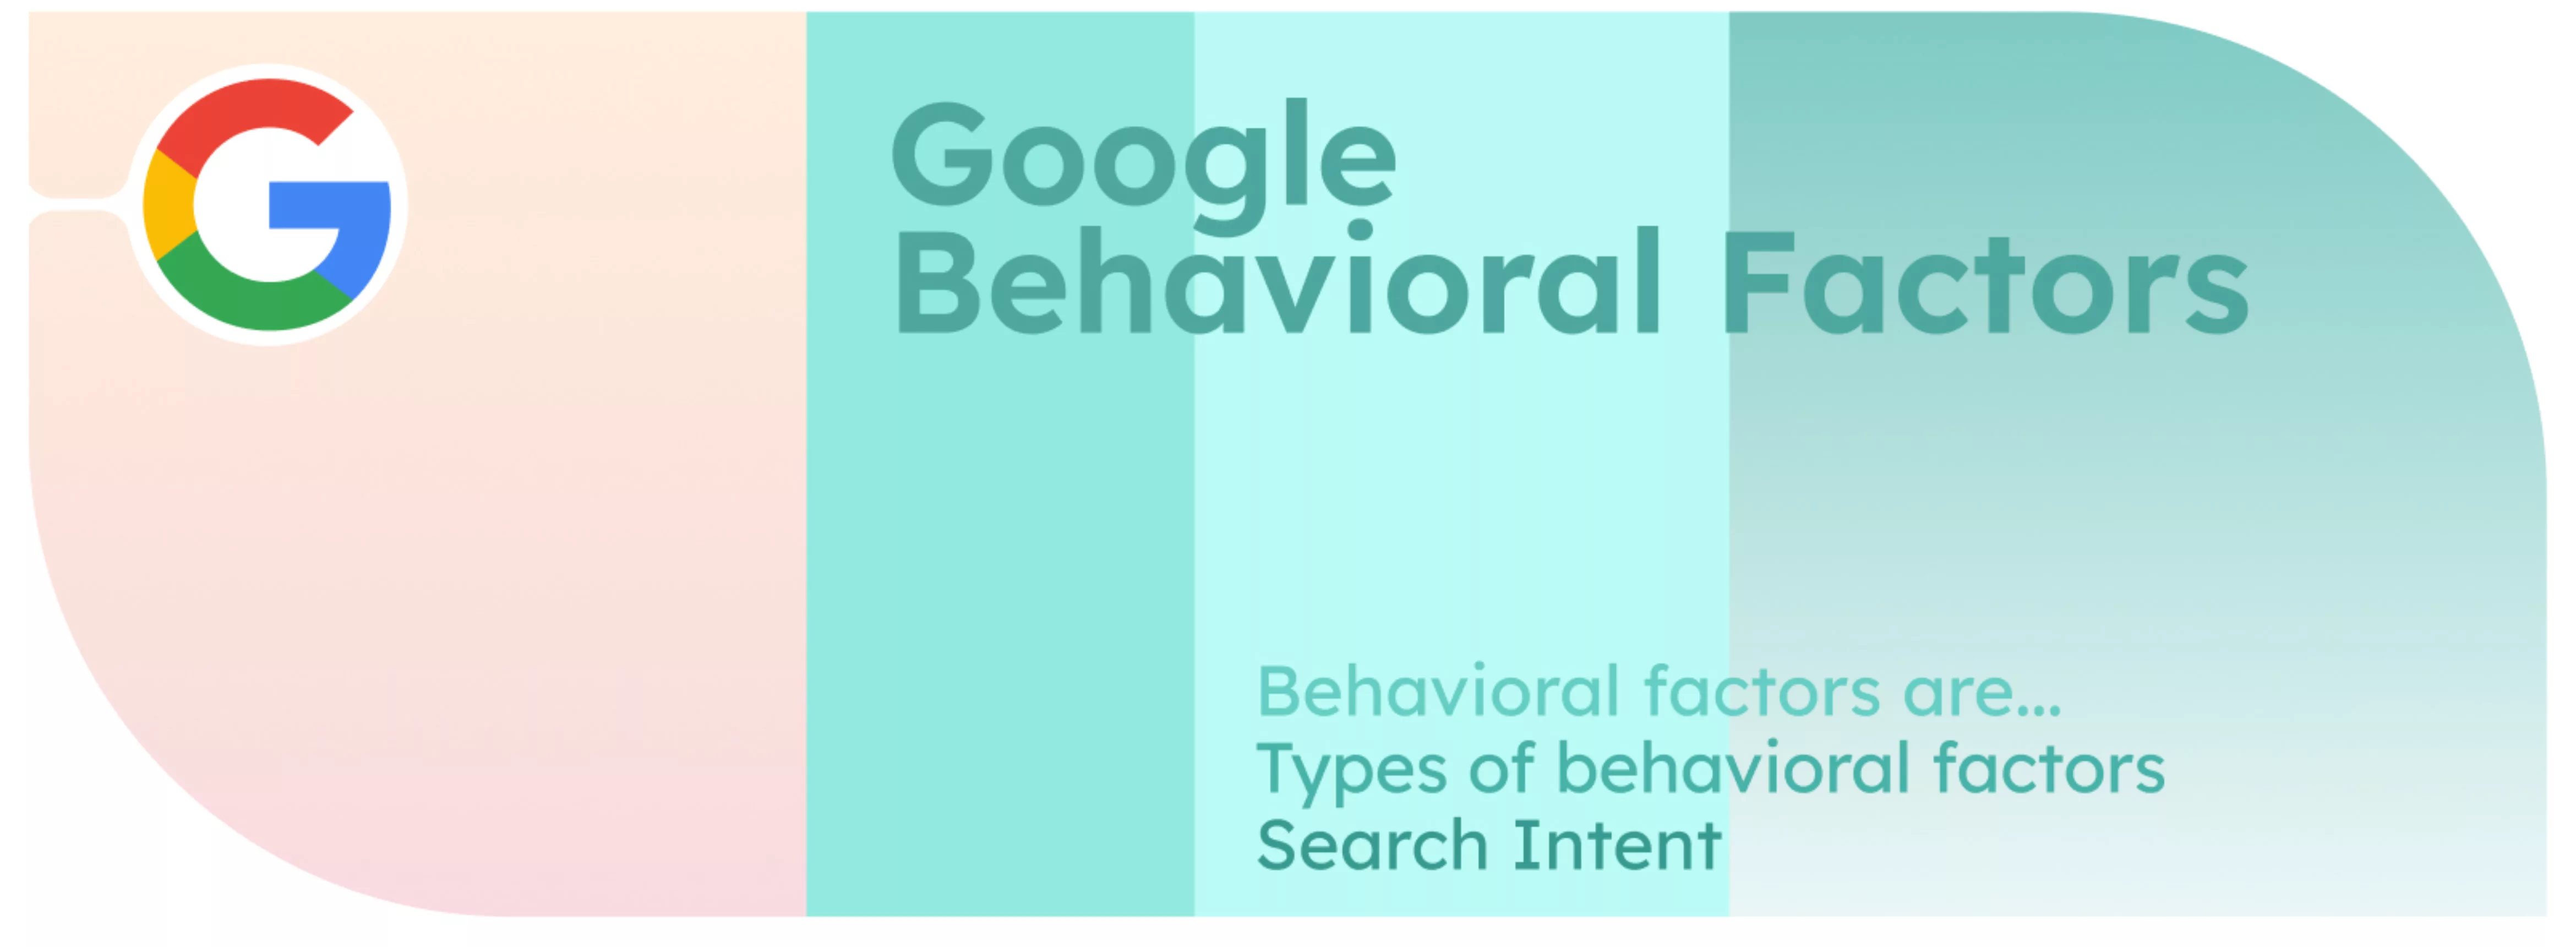 Les facteurs comportementaux de Google